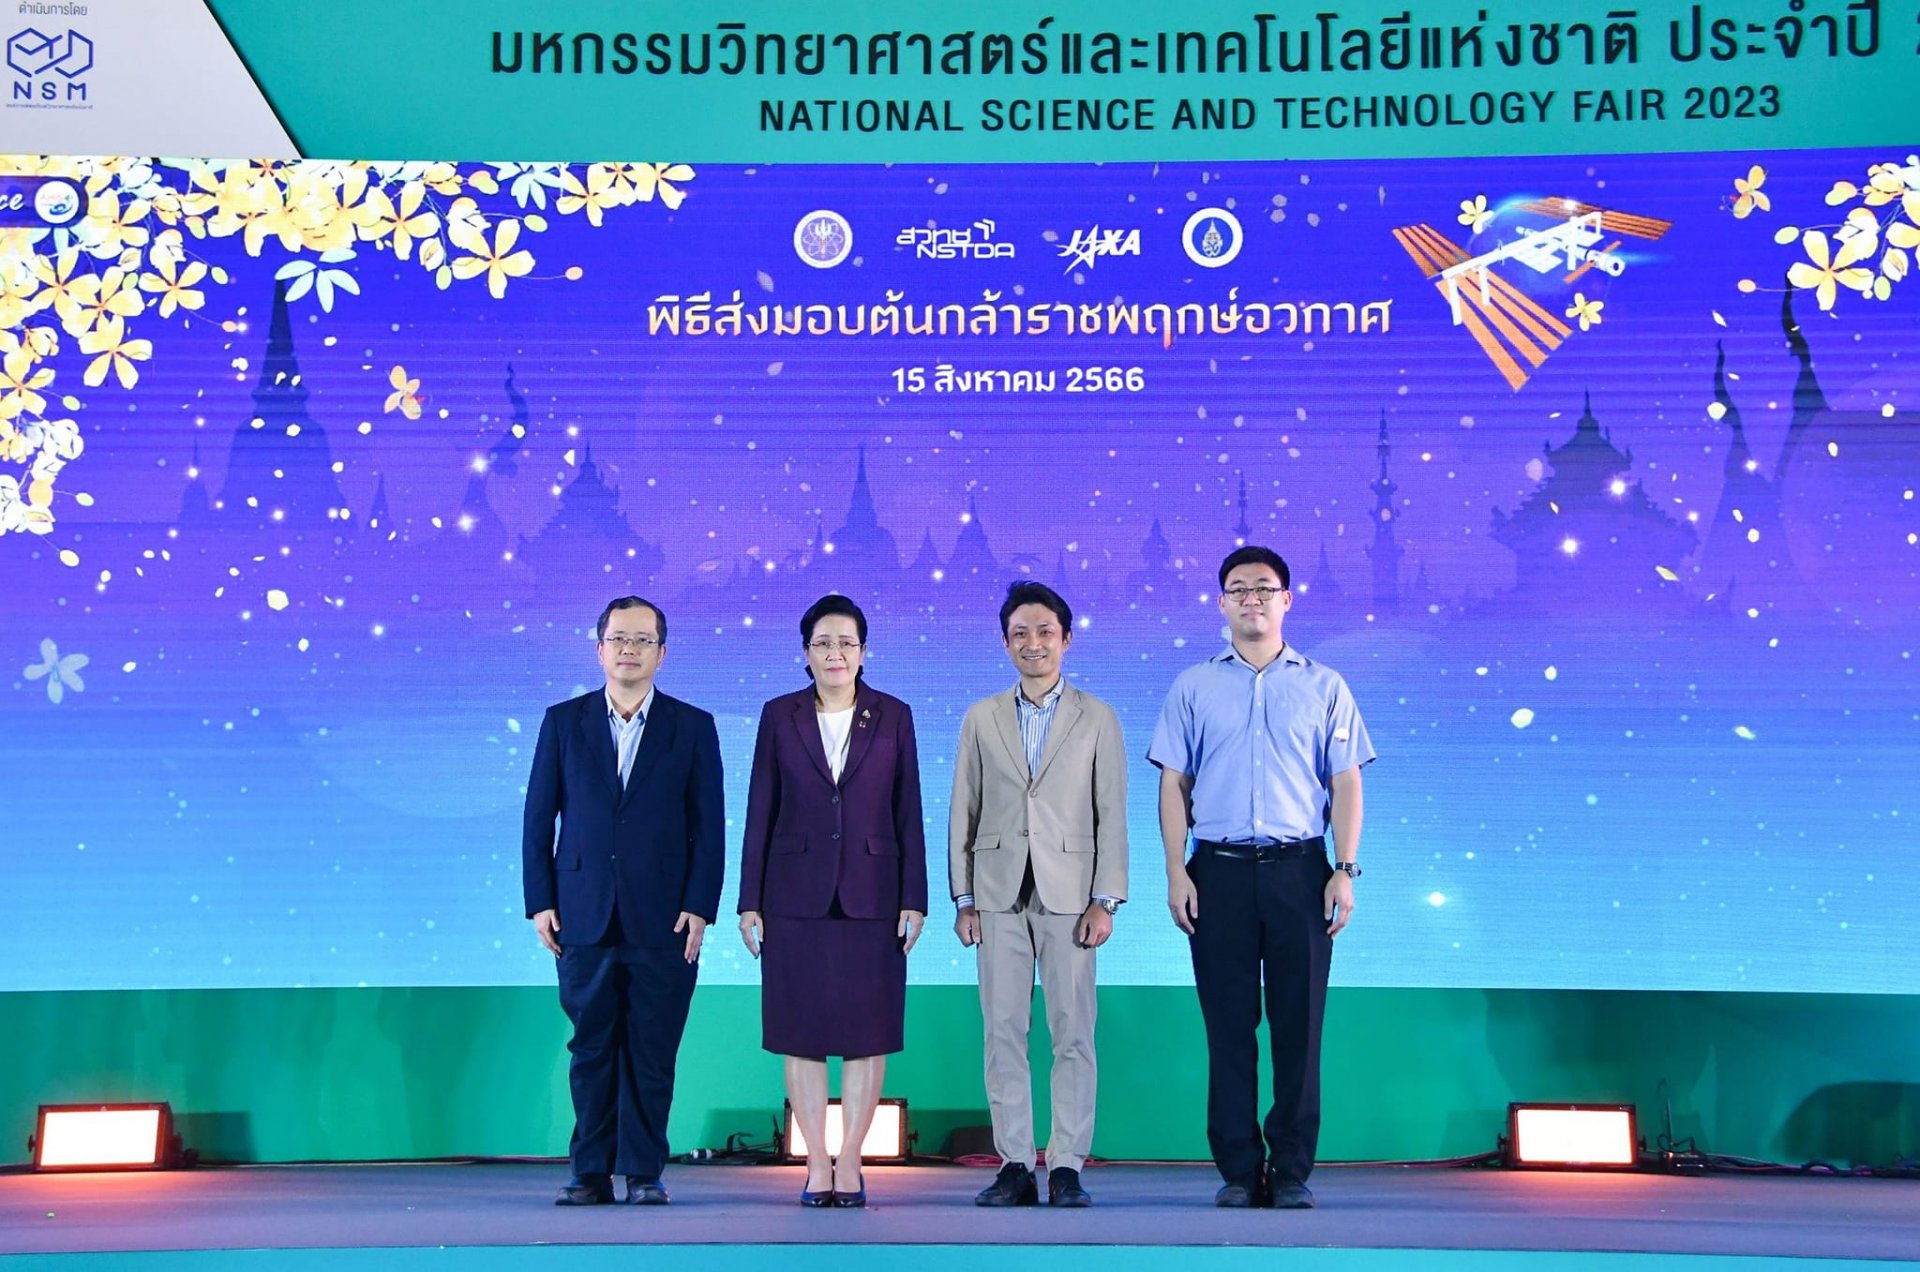 "สวทช. - แจ็กซา" ส่งมอบ "ต้นกล้าราชพฤกษ์อวกาศ" ภาครัฐและสถาบันการศึกษา พร้อมปลูกทั่วไทย